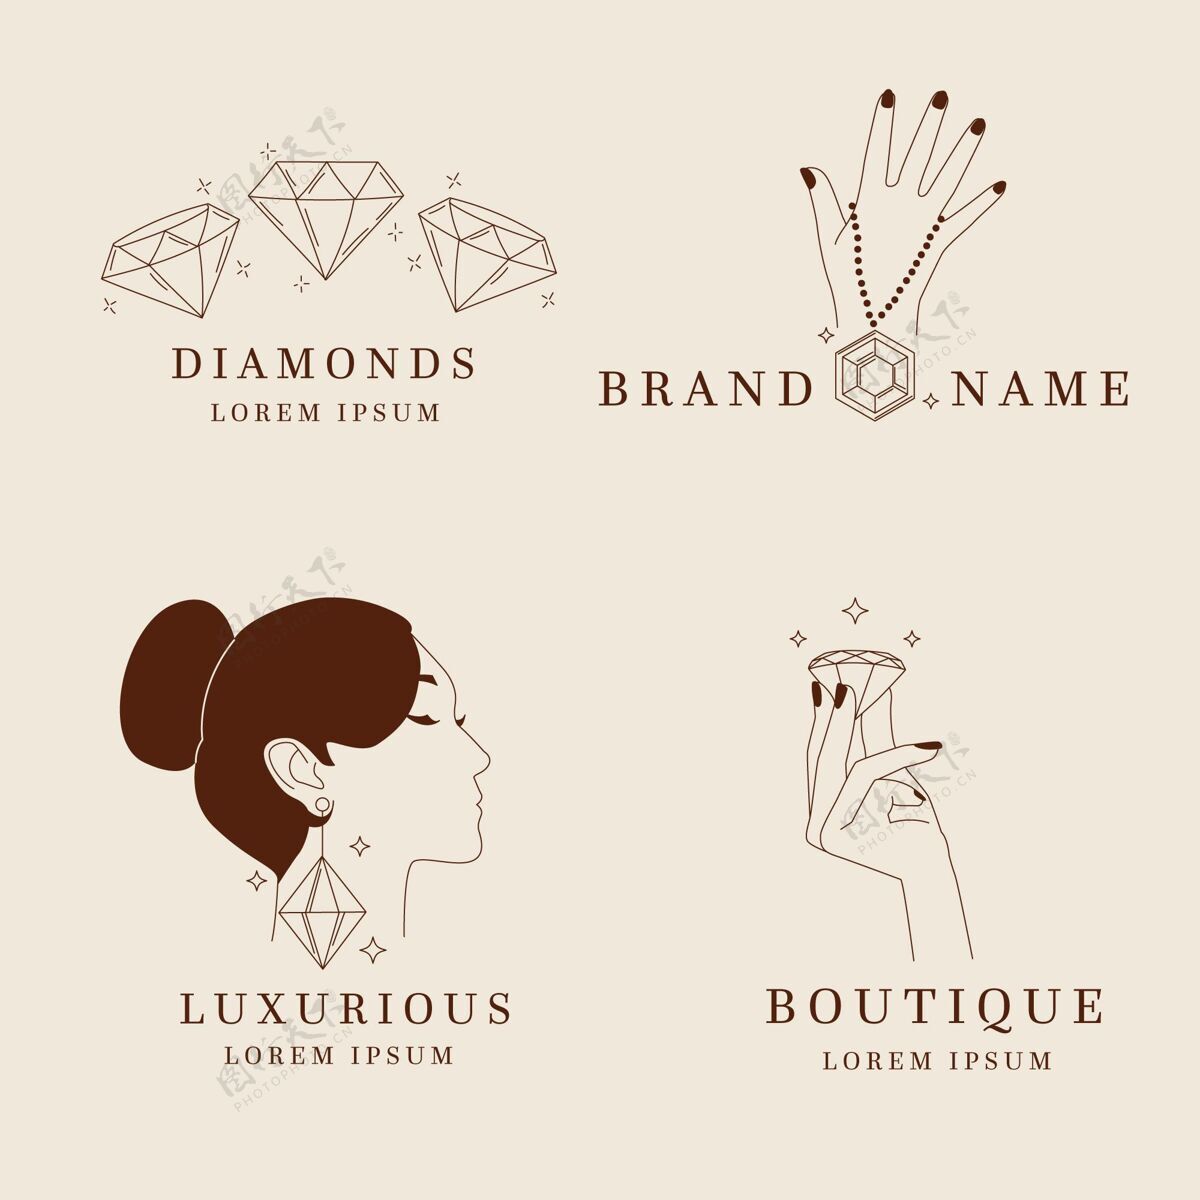 企业标识手绘珠宝标志包标识套装品牌